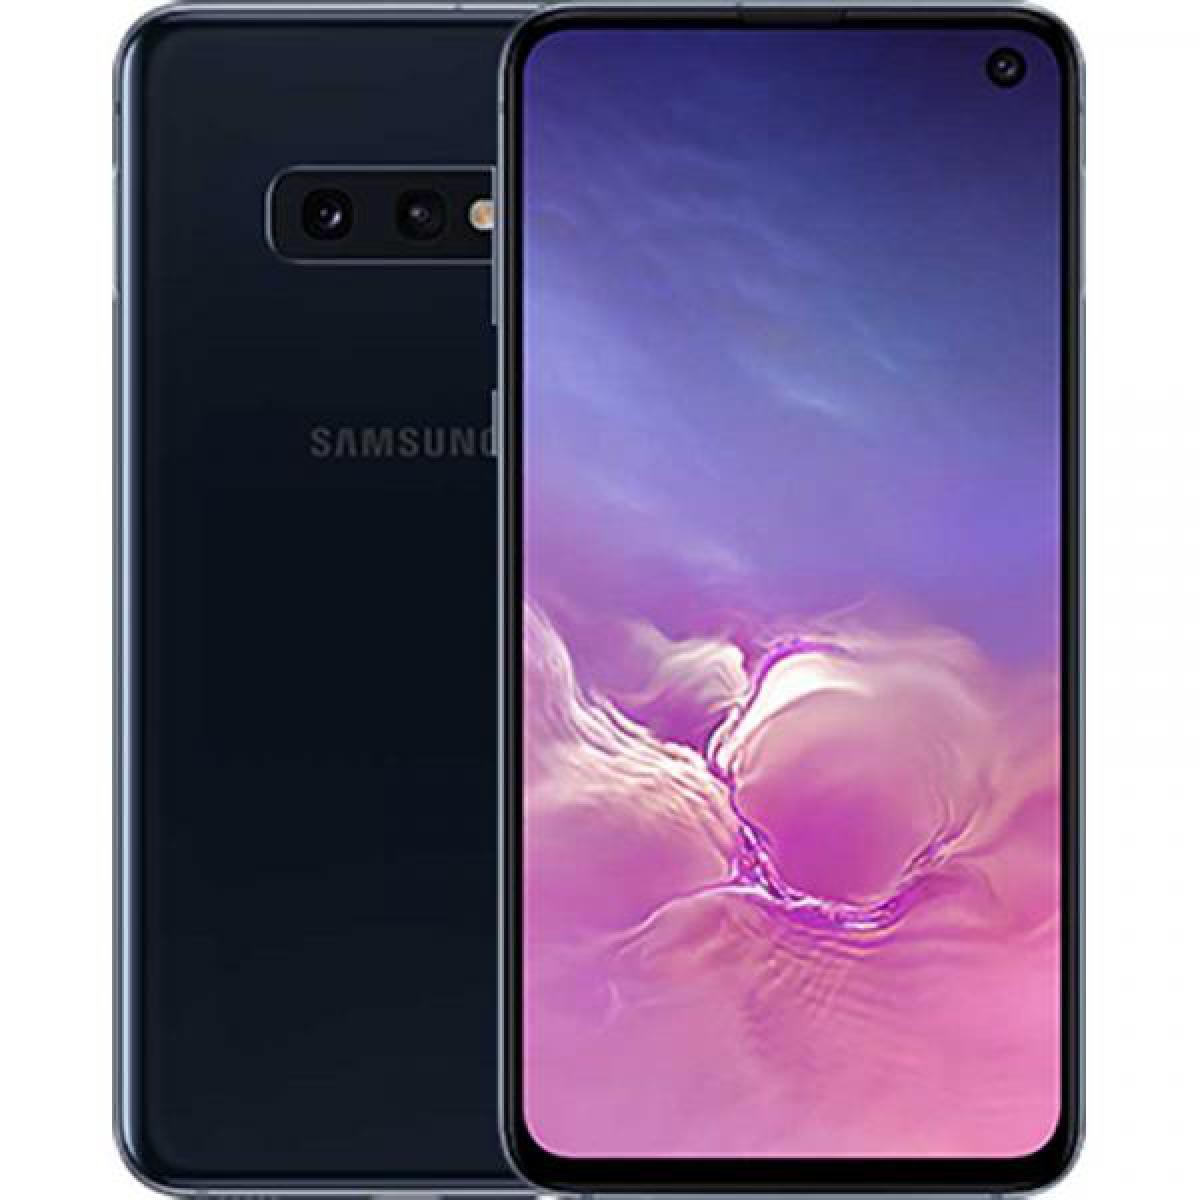 Samsung - Samsung G970 Galaxy S10e 4G 128GB Dual-SIM prism black EU - Bracelet connecté